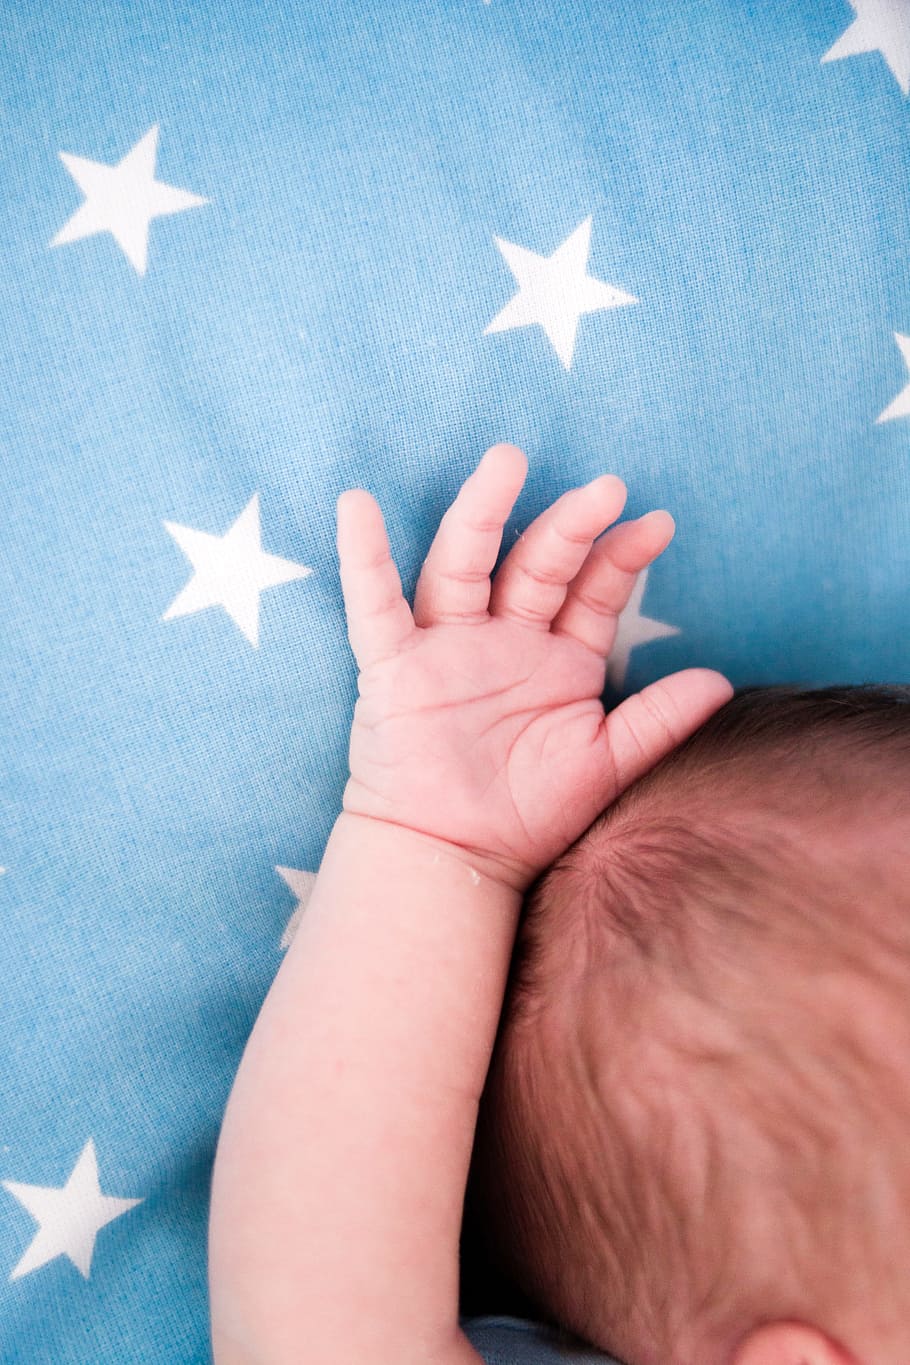 kecil, bayi, tangan, biru, bintang, jari, bayi baru lahir, keluarga, bentuk bintang, tangan manusia